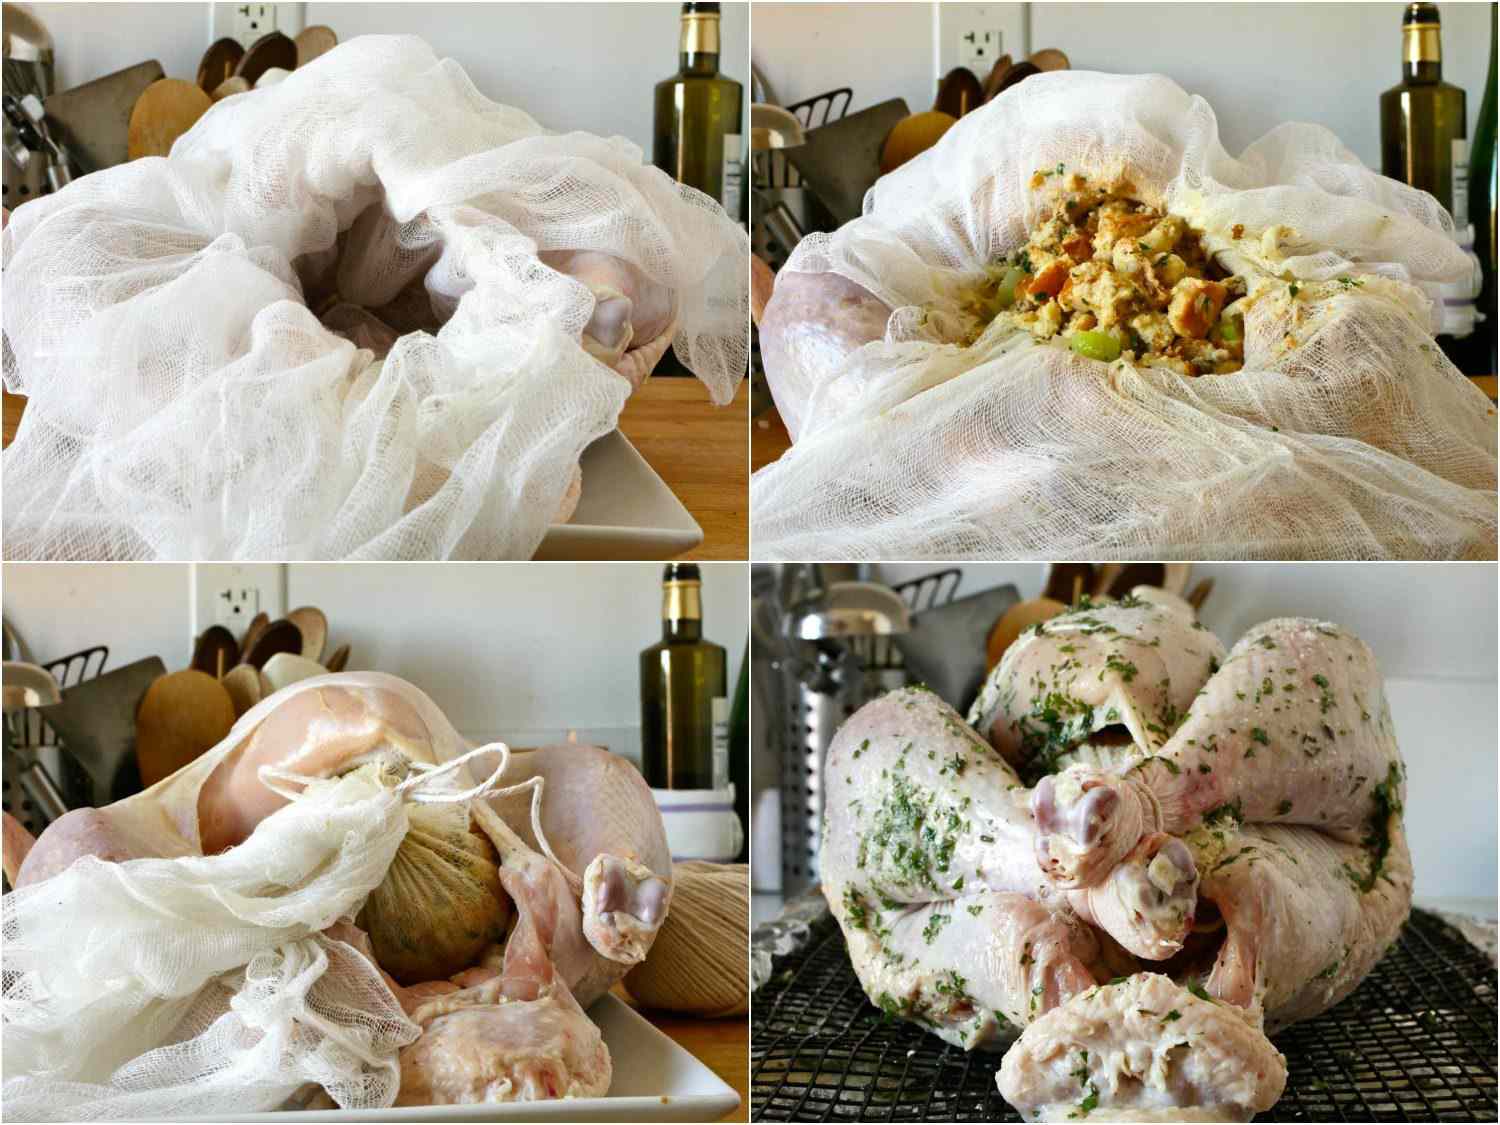 拼贴的填充物包裹在粗棉布和填充在火鸡。